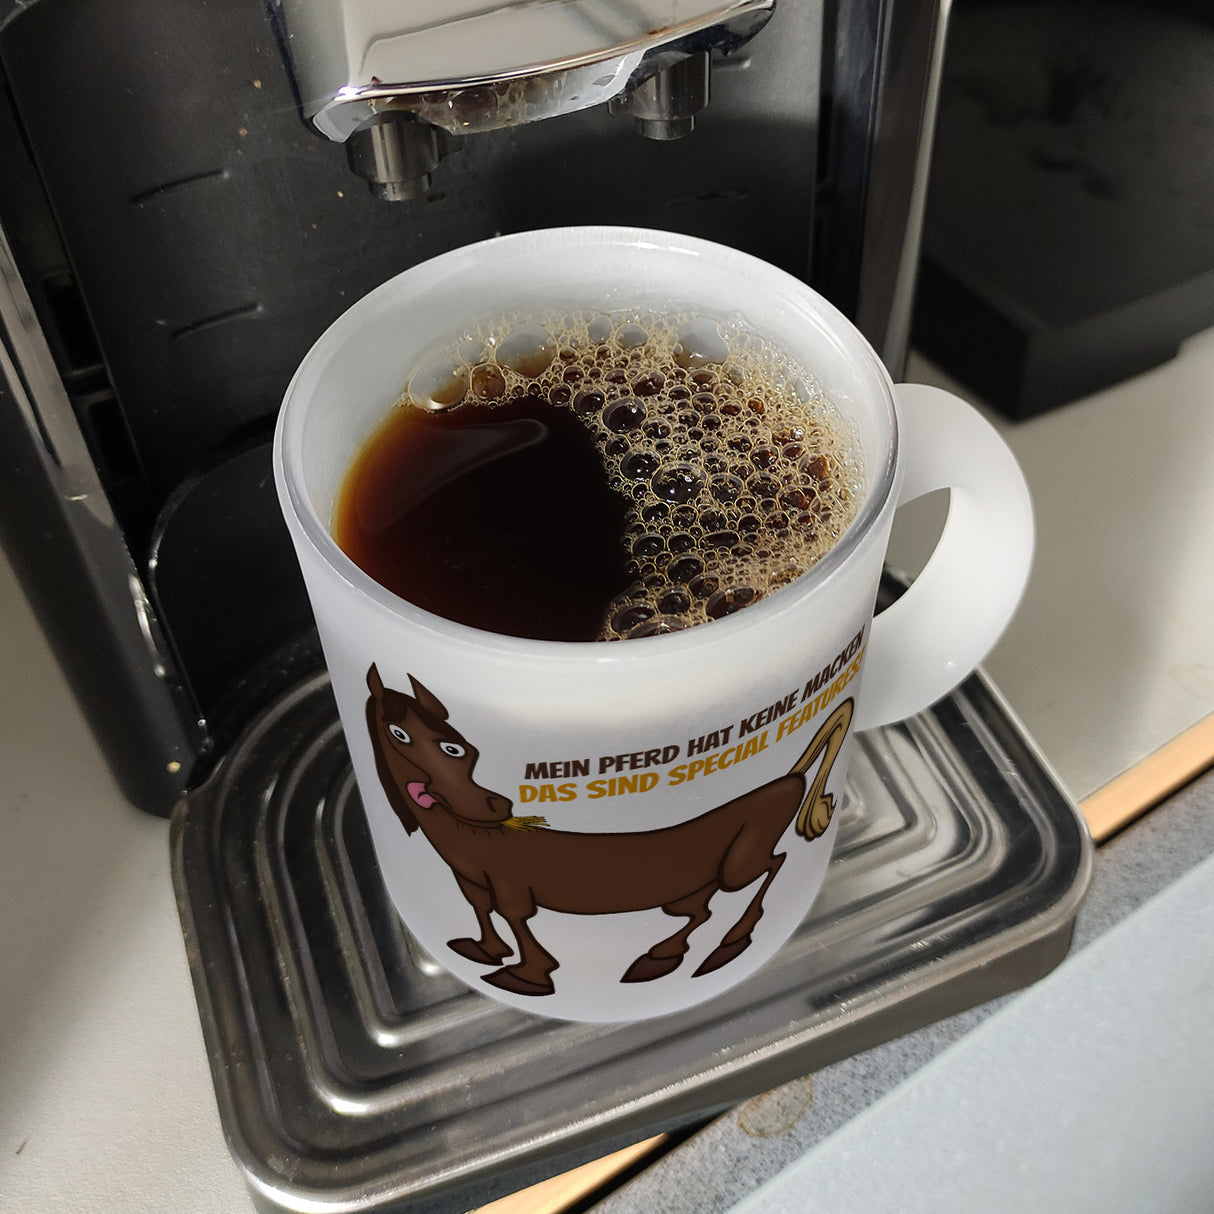 Kaffeebecher mit Pferde Motiv und Spruch: Mein Pferd hat keine Macke. Das ...